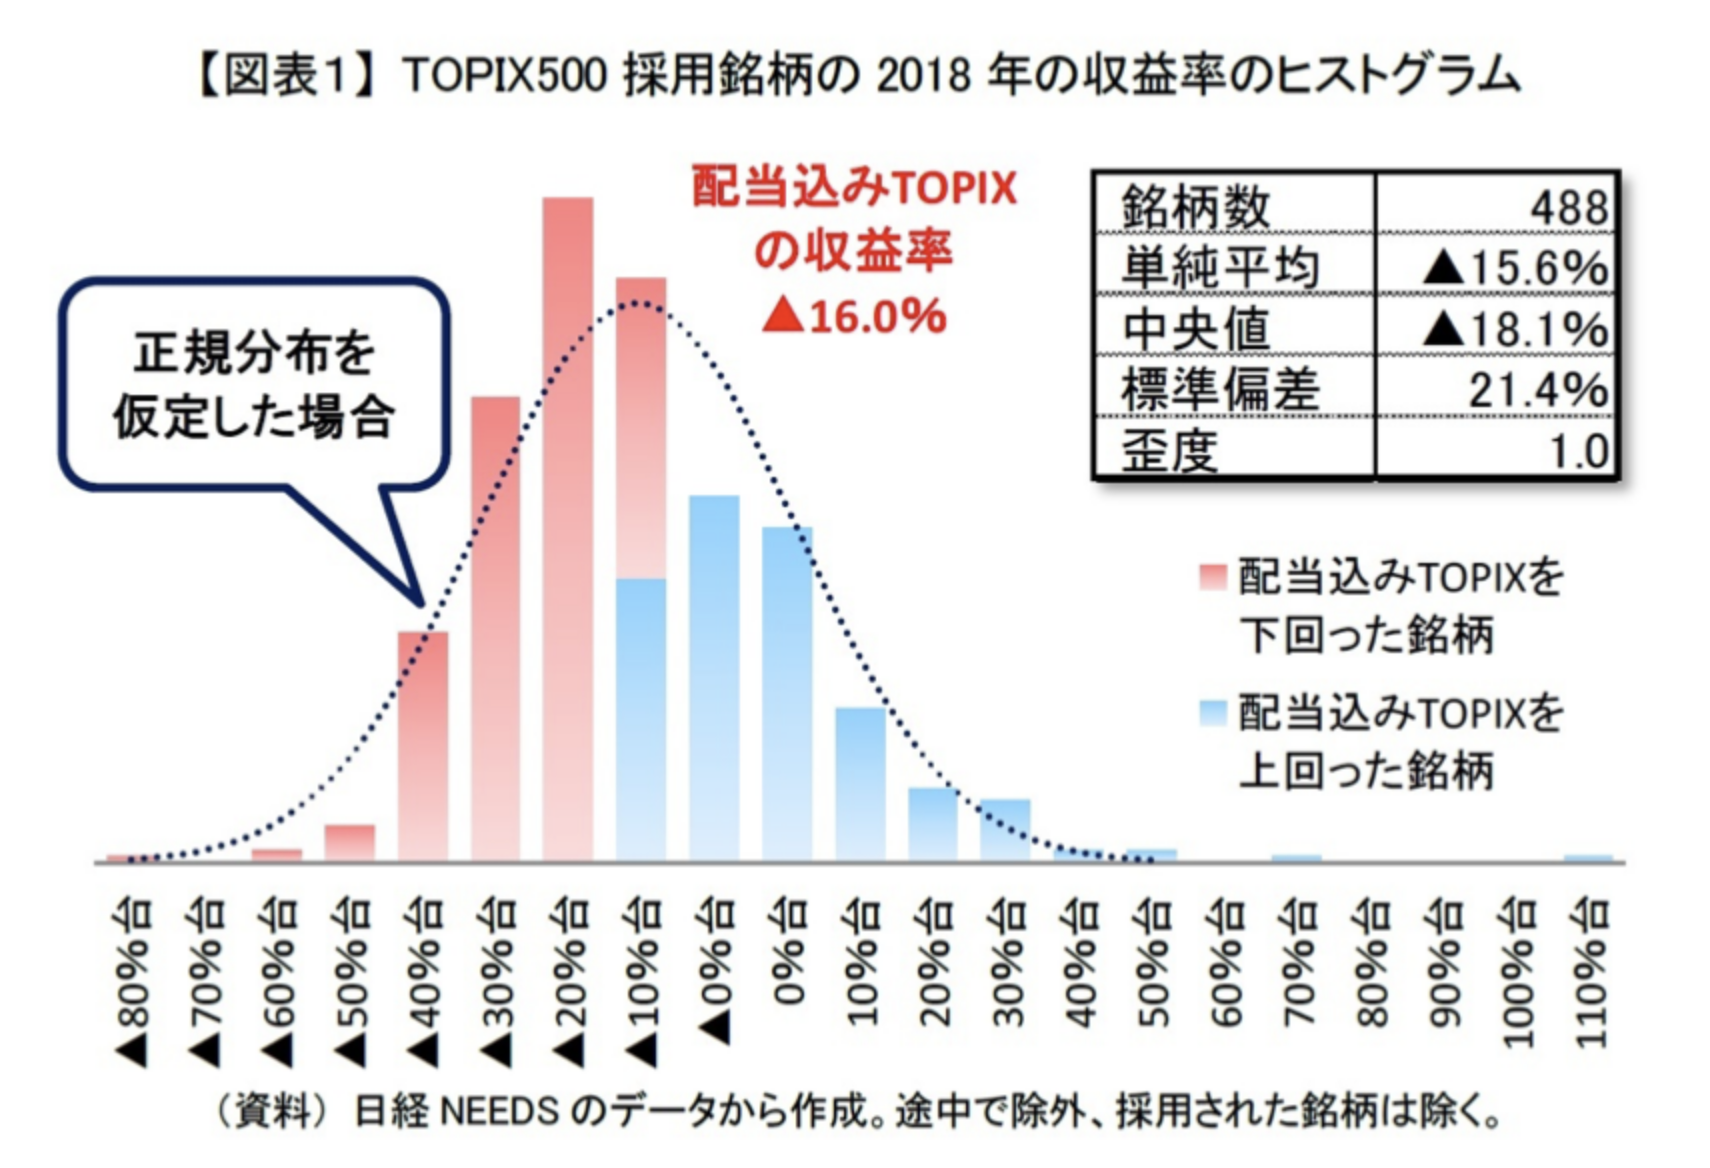 TOPIX500採用銘柄の収益率のヒストグラム